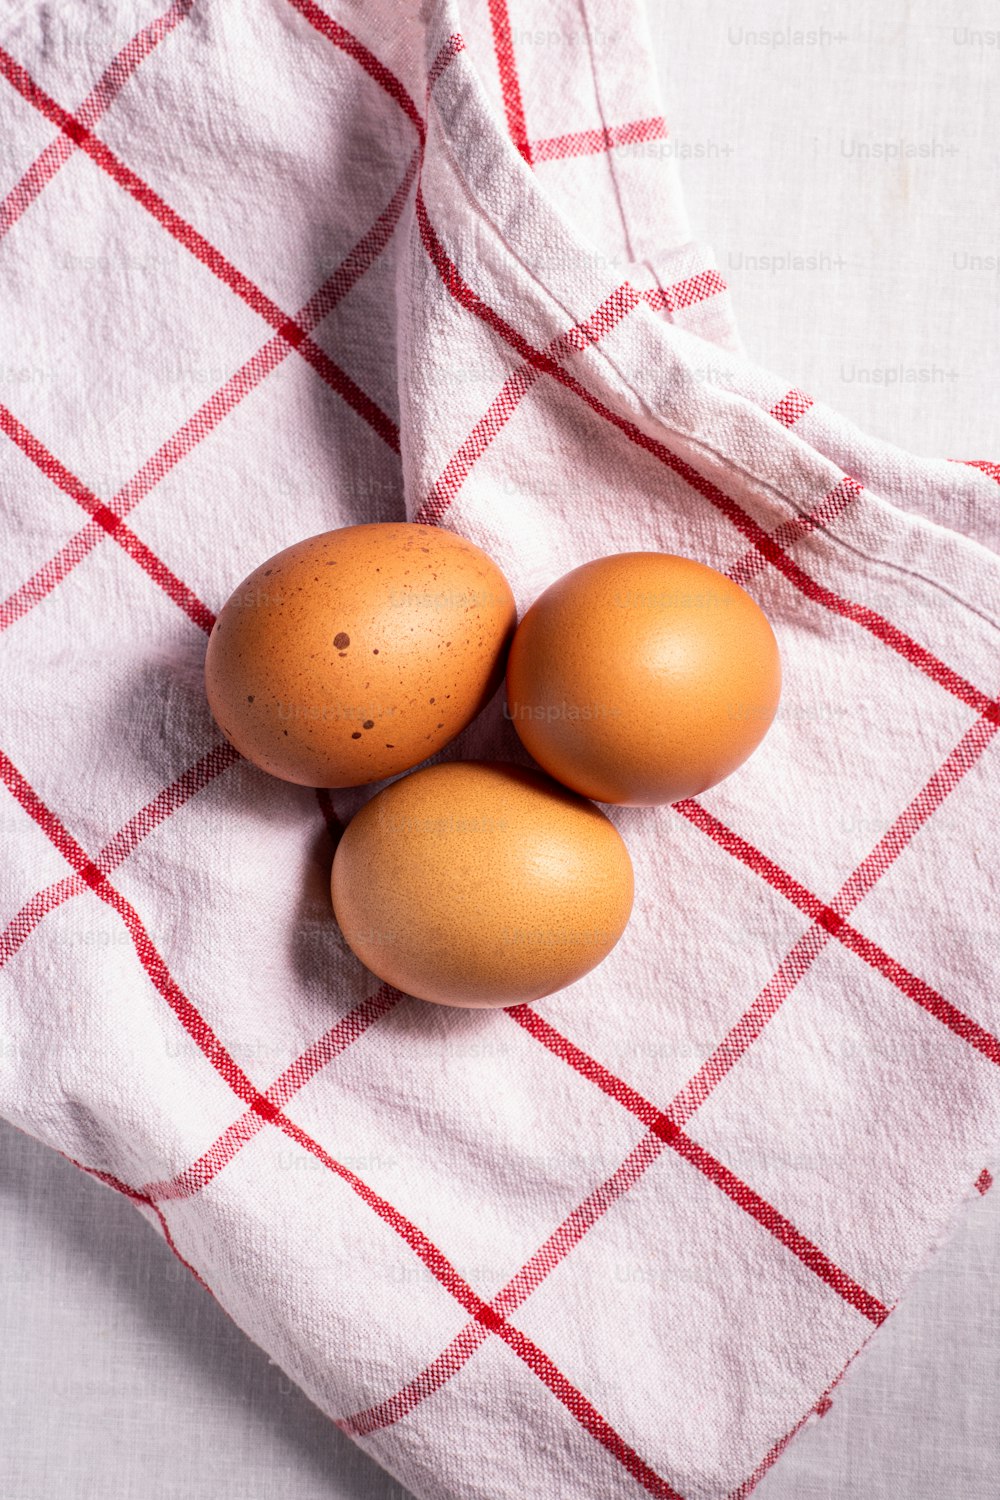 Trois œufs bruns sur une serviette à carreaux rouge et blanc